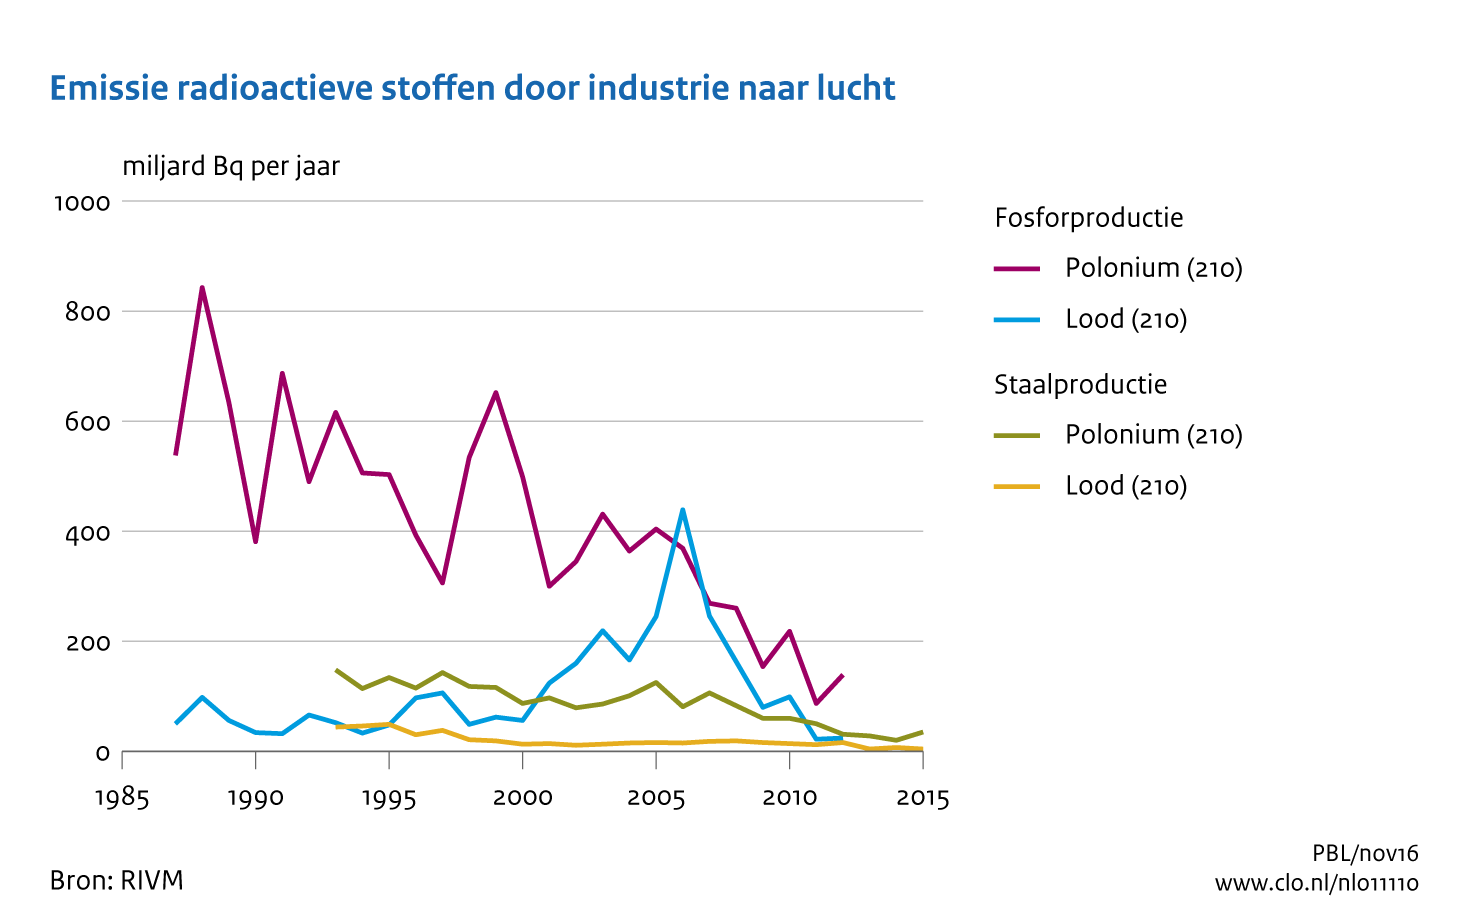 Figuur Emissie radioactieve stoffen naar lucht door de Nederlandse industrie. In de rest van de tekst wordt deze figuur uitgebreider uitgelegd.